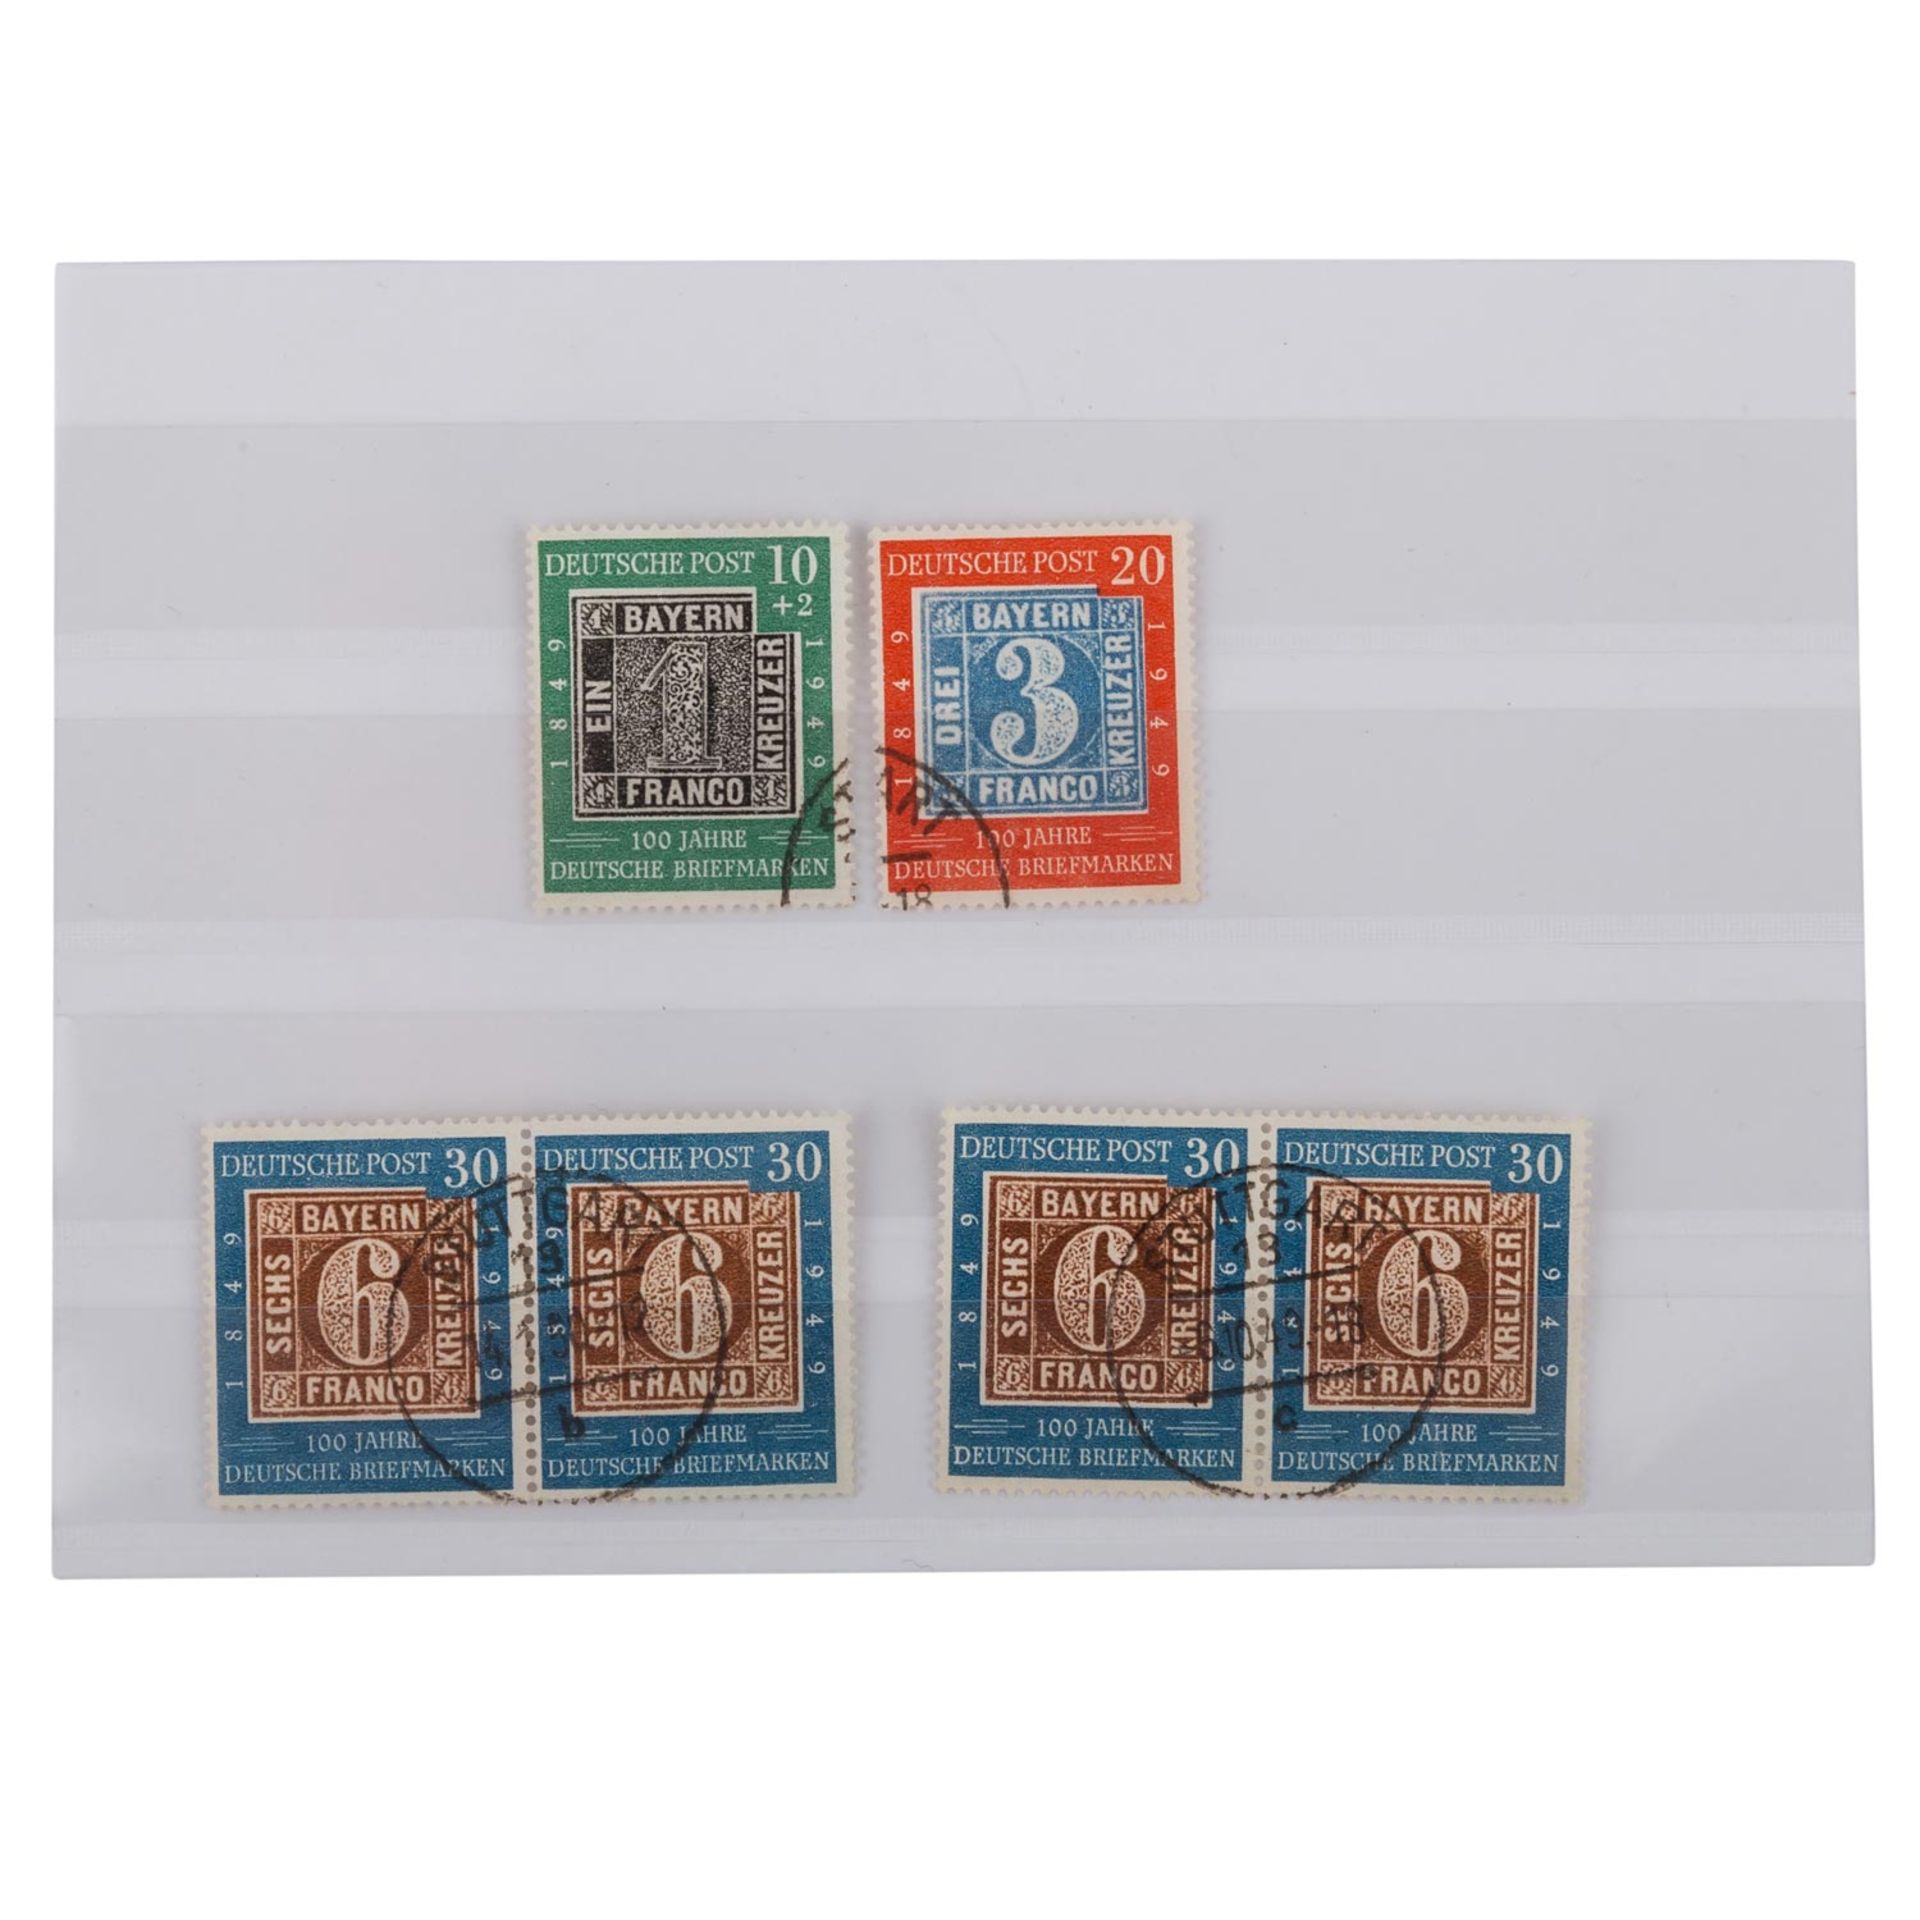 BRD - 1949, Ausgabe 100 Jahre Dt. Briefmarke,gestempelt, der Wert zu 30 Pfg. in zwei waagerechten